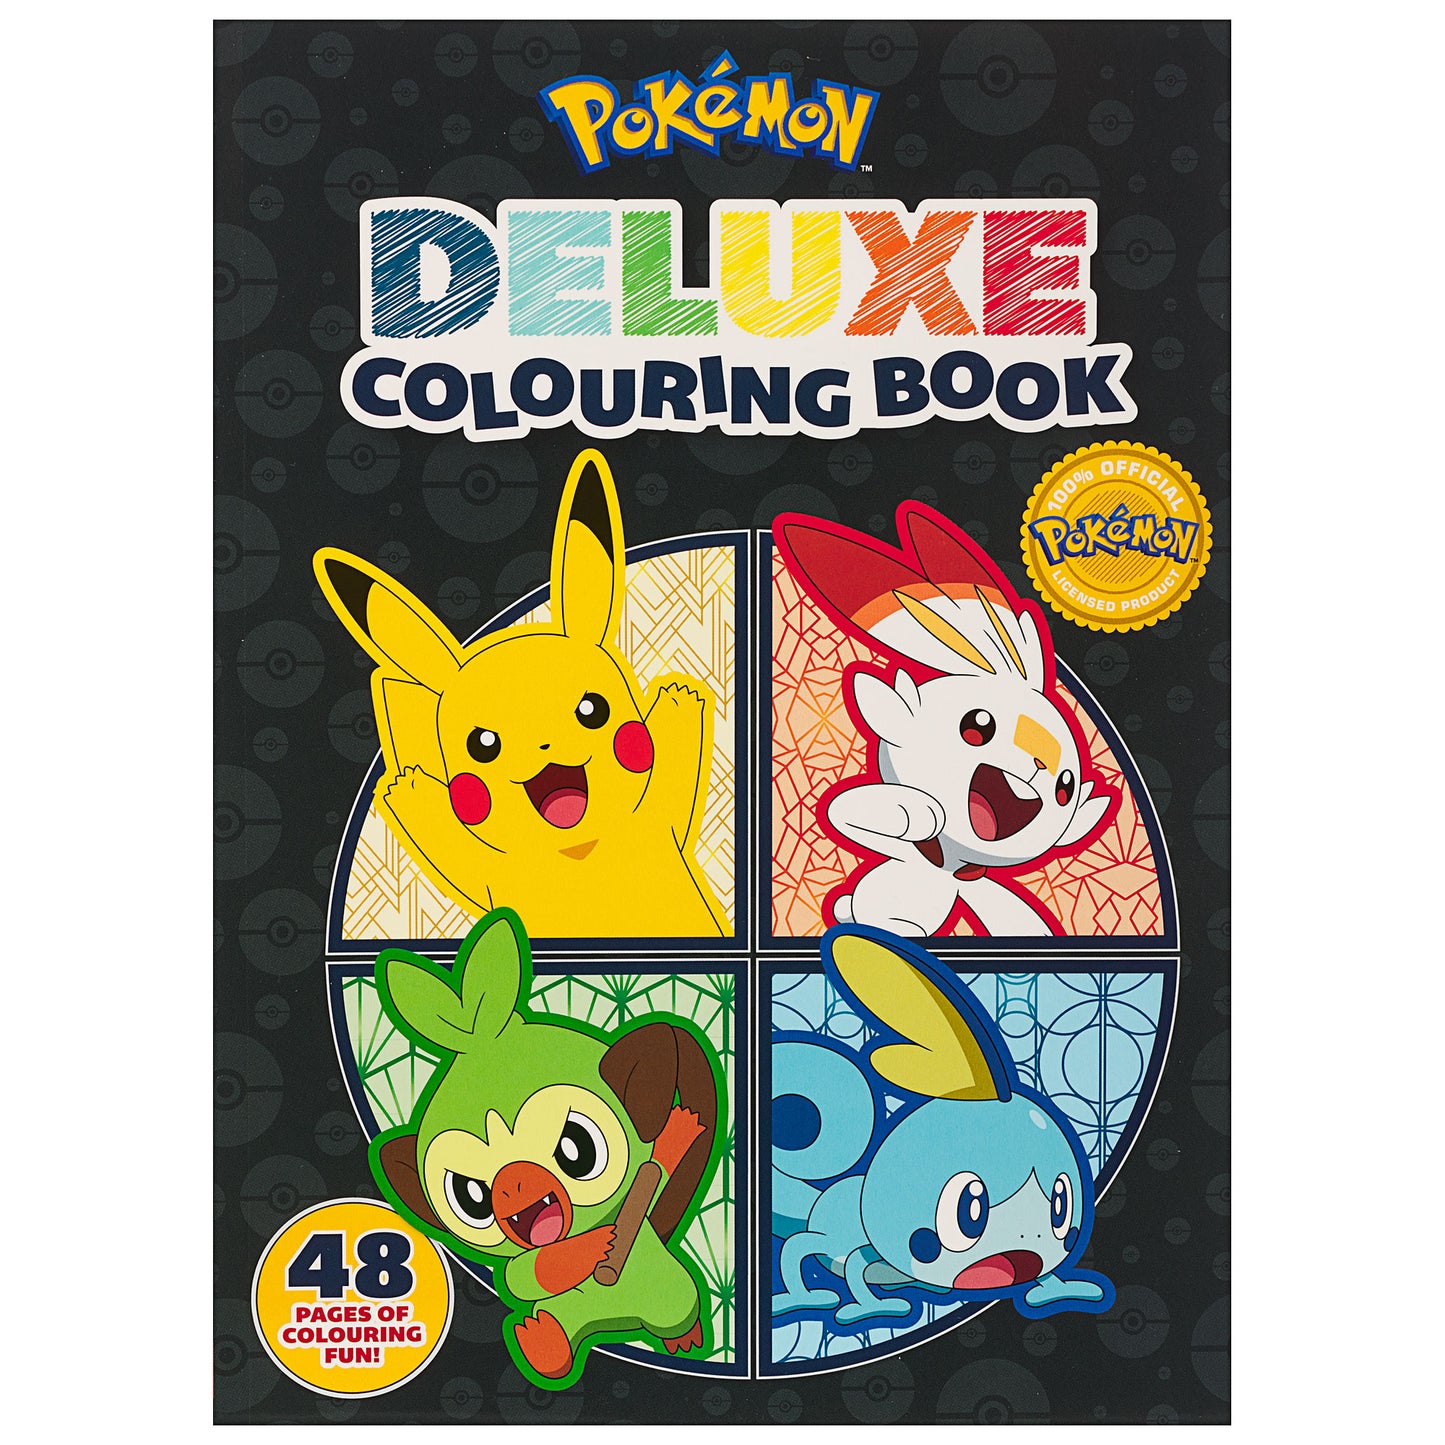 Deluxe Colouring Book Pokémon